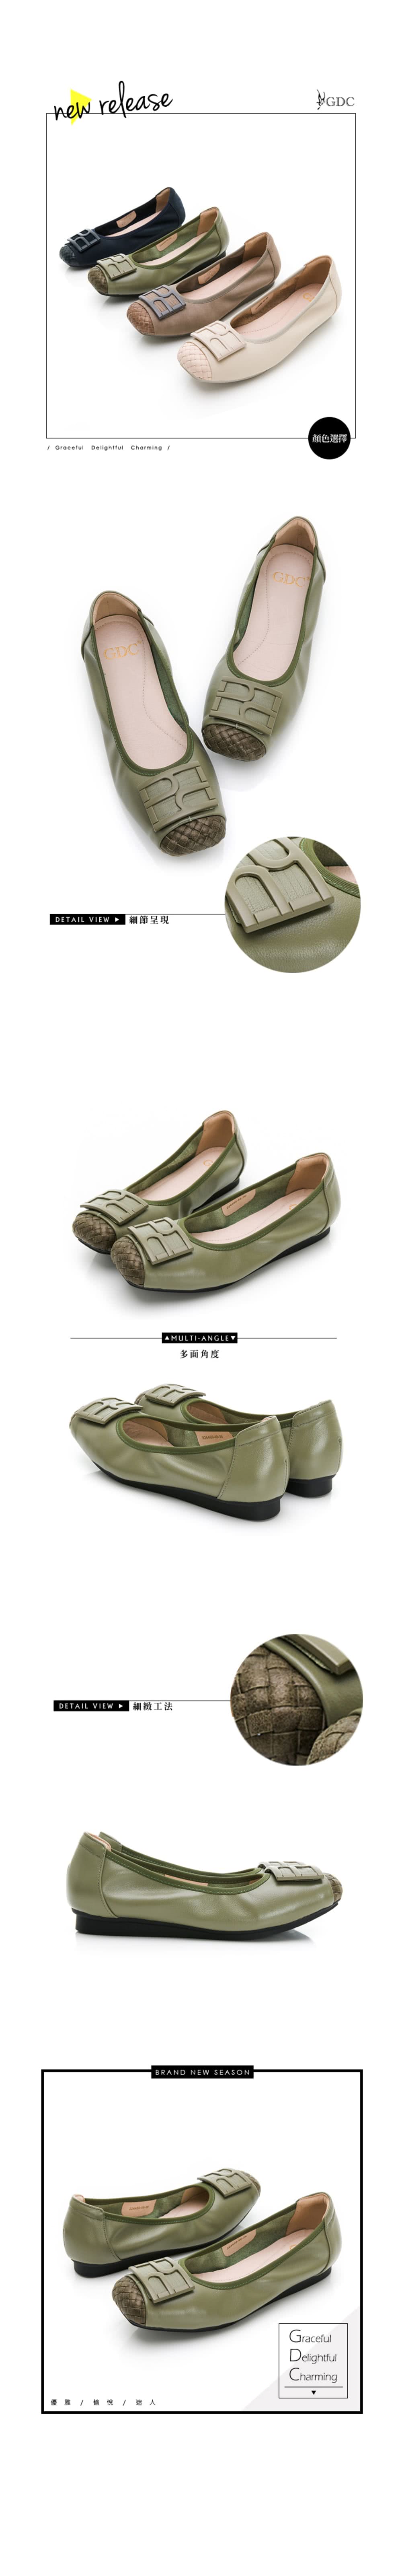 GDC 撞色時尚舒適真皮平底包鞋-淺綠色(224489-48